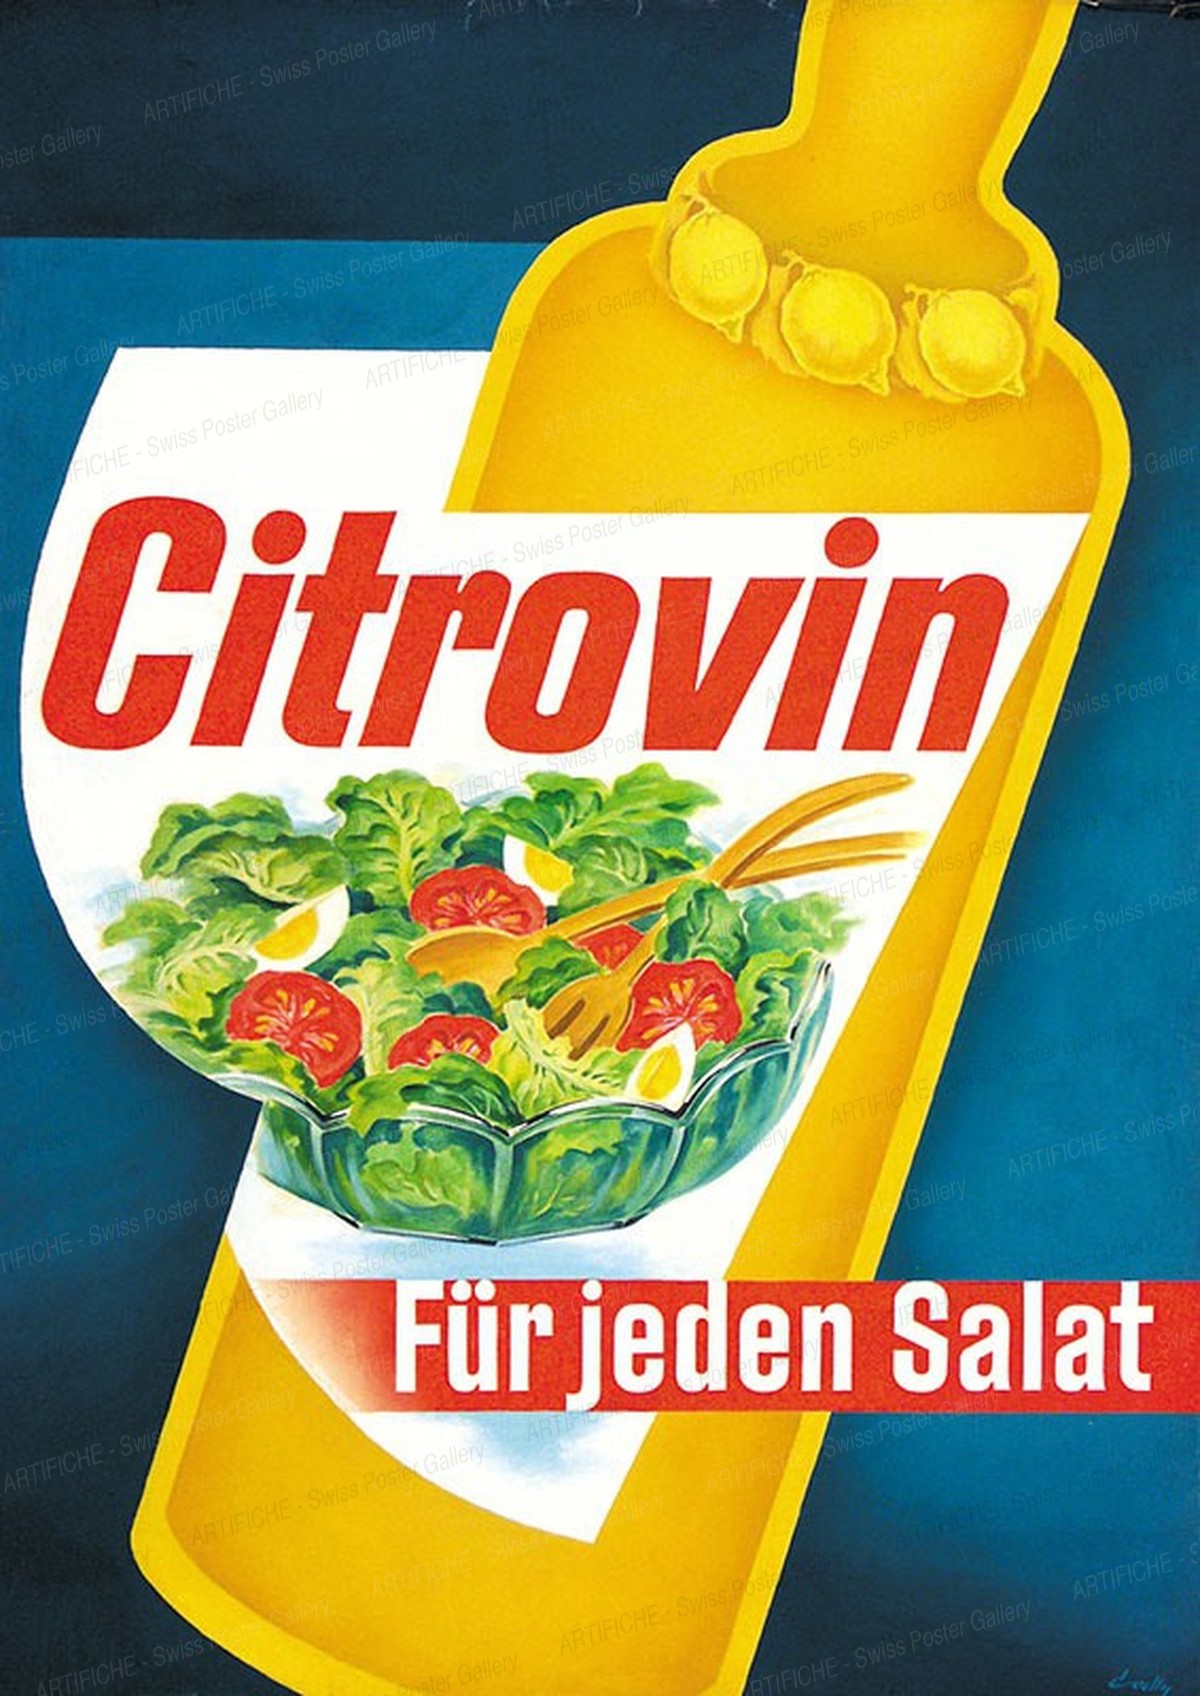 CITROVIN – Für jeden Salat, Hermann Alfred Koelliker